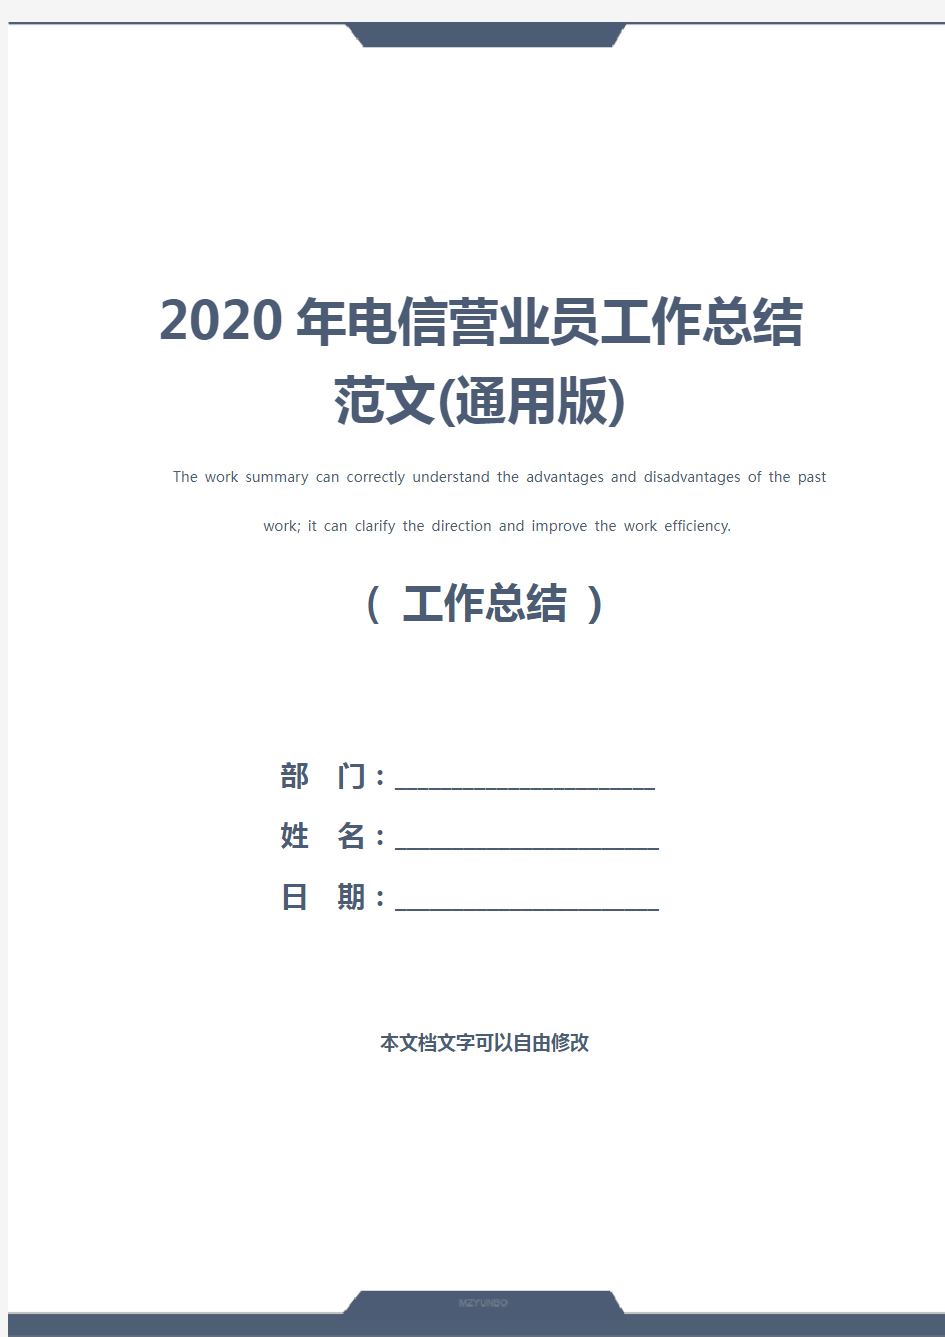 2020年电信营业员工作总结范文(通用版)